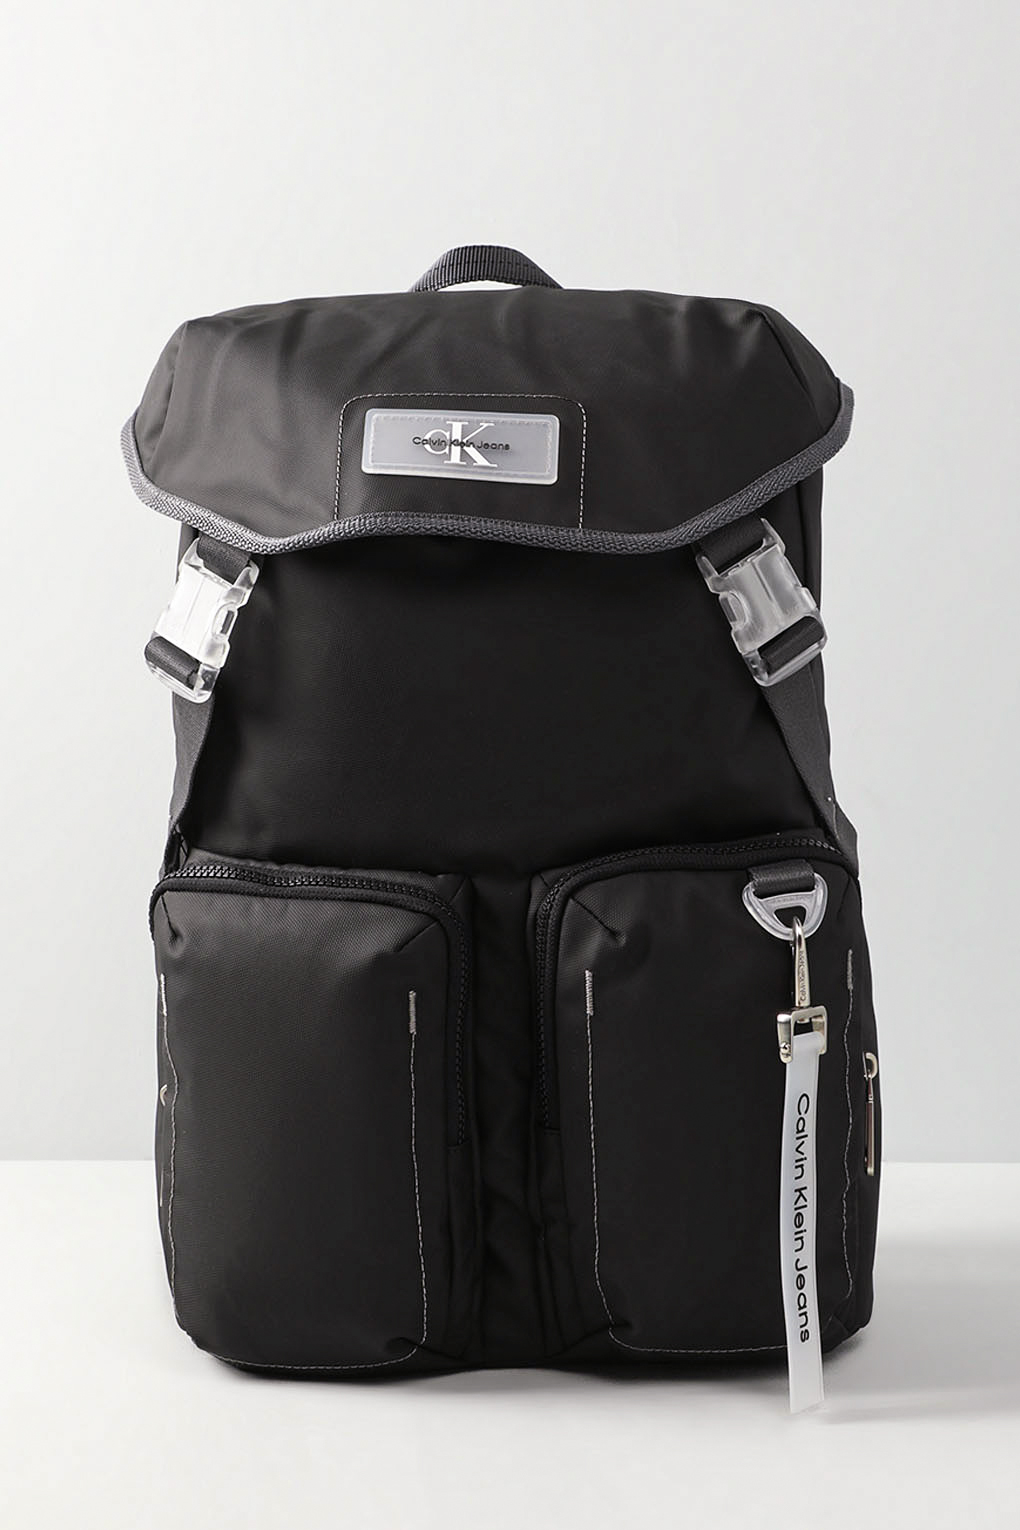 Рюкзак мужской Calvin Klein K50K511054 черный, 40x30x16 см